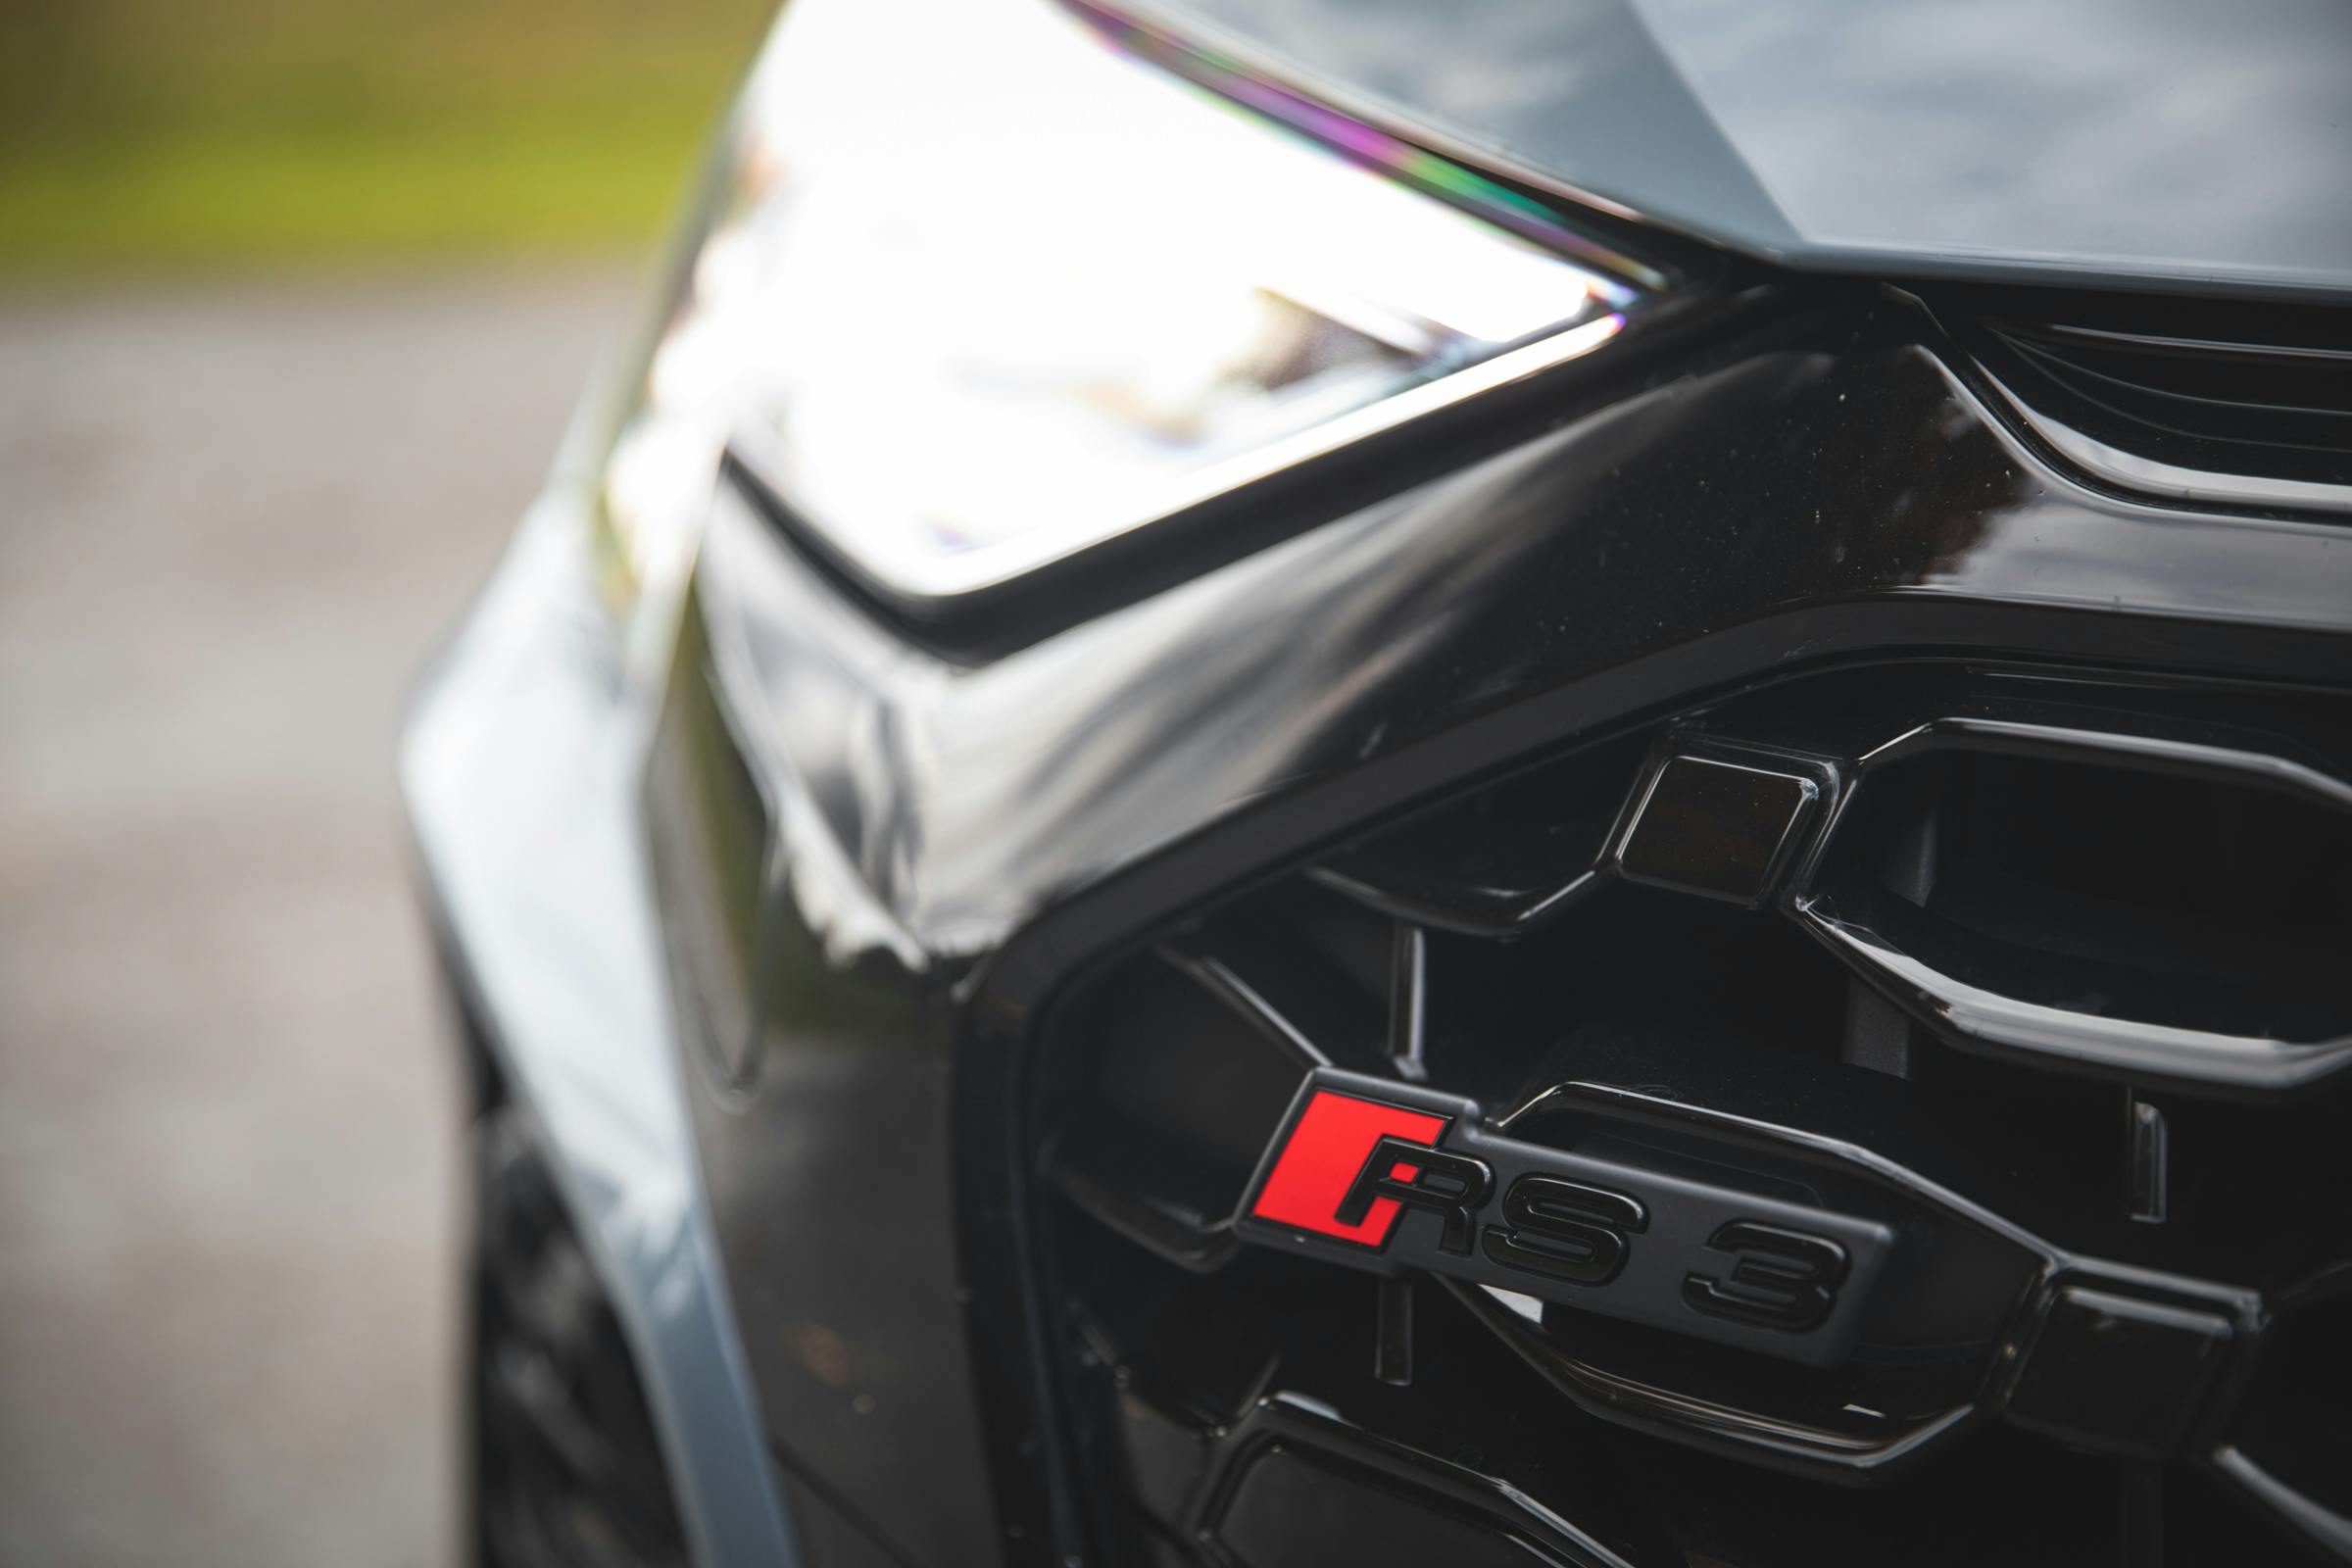 2022 Audi RS 3 grille emblem detail